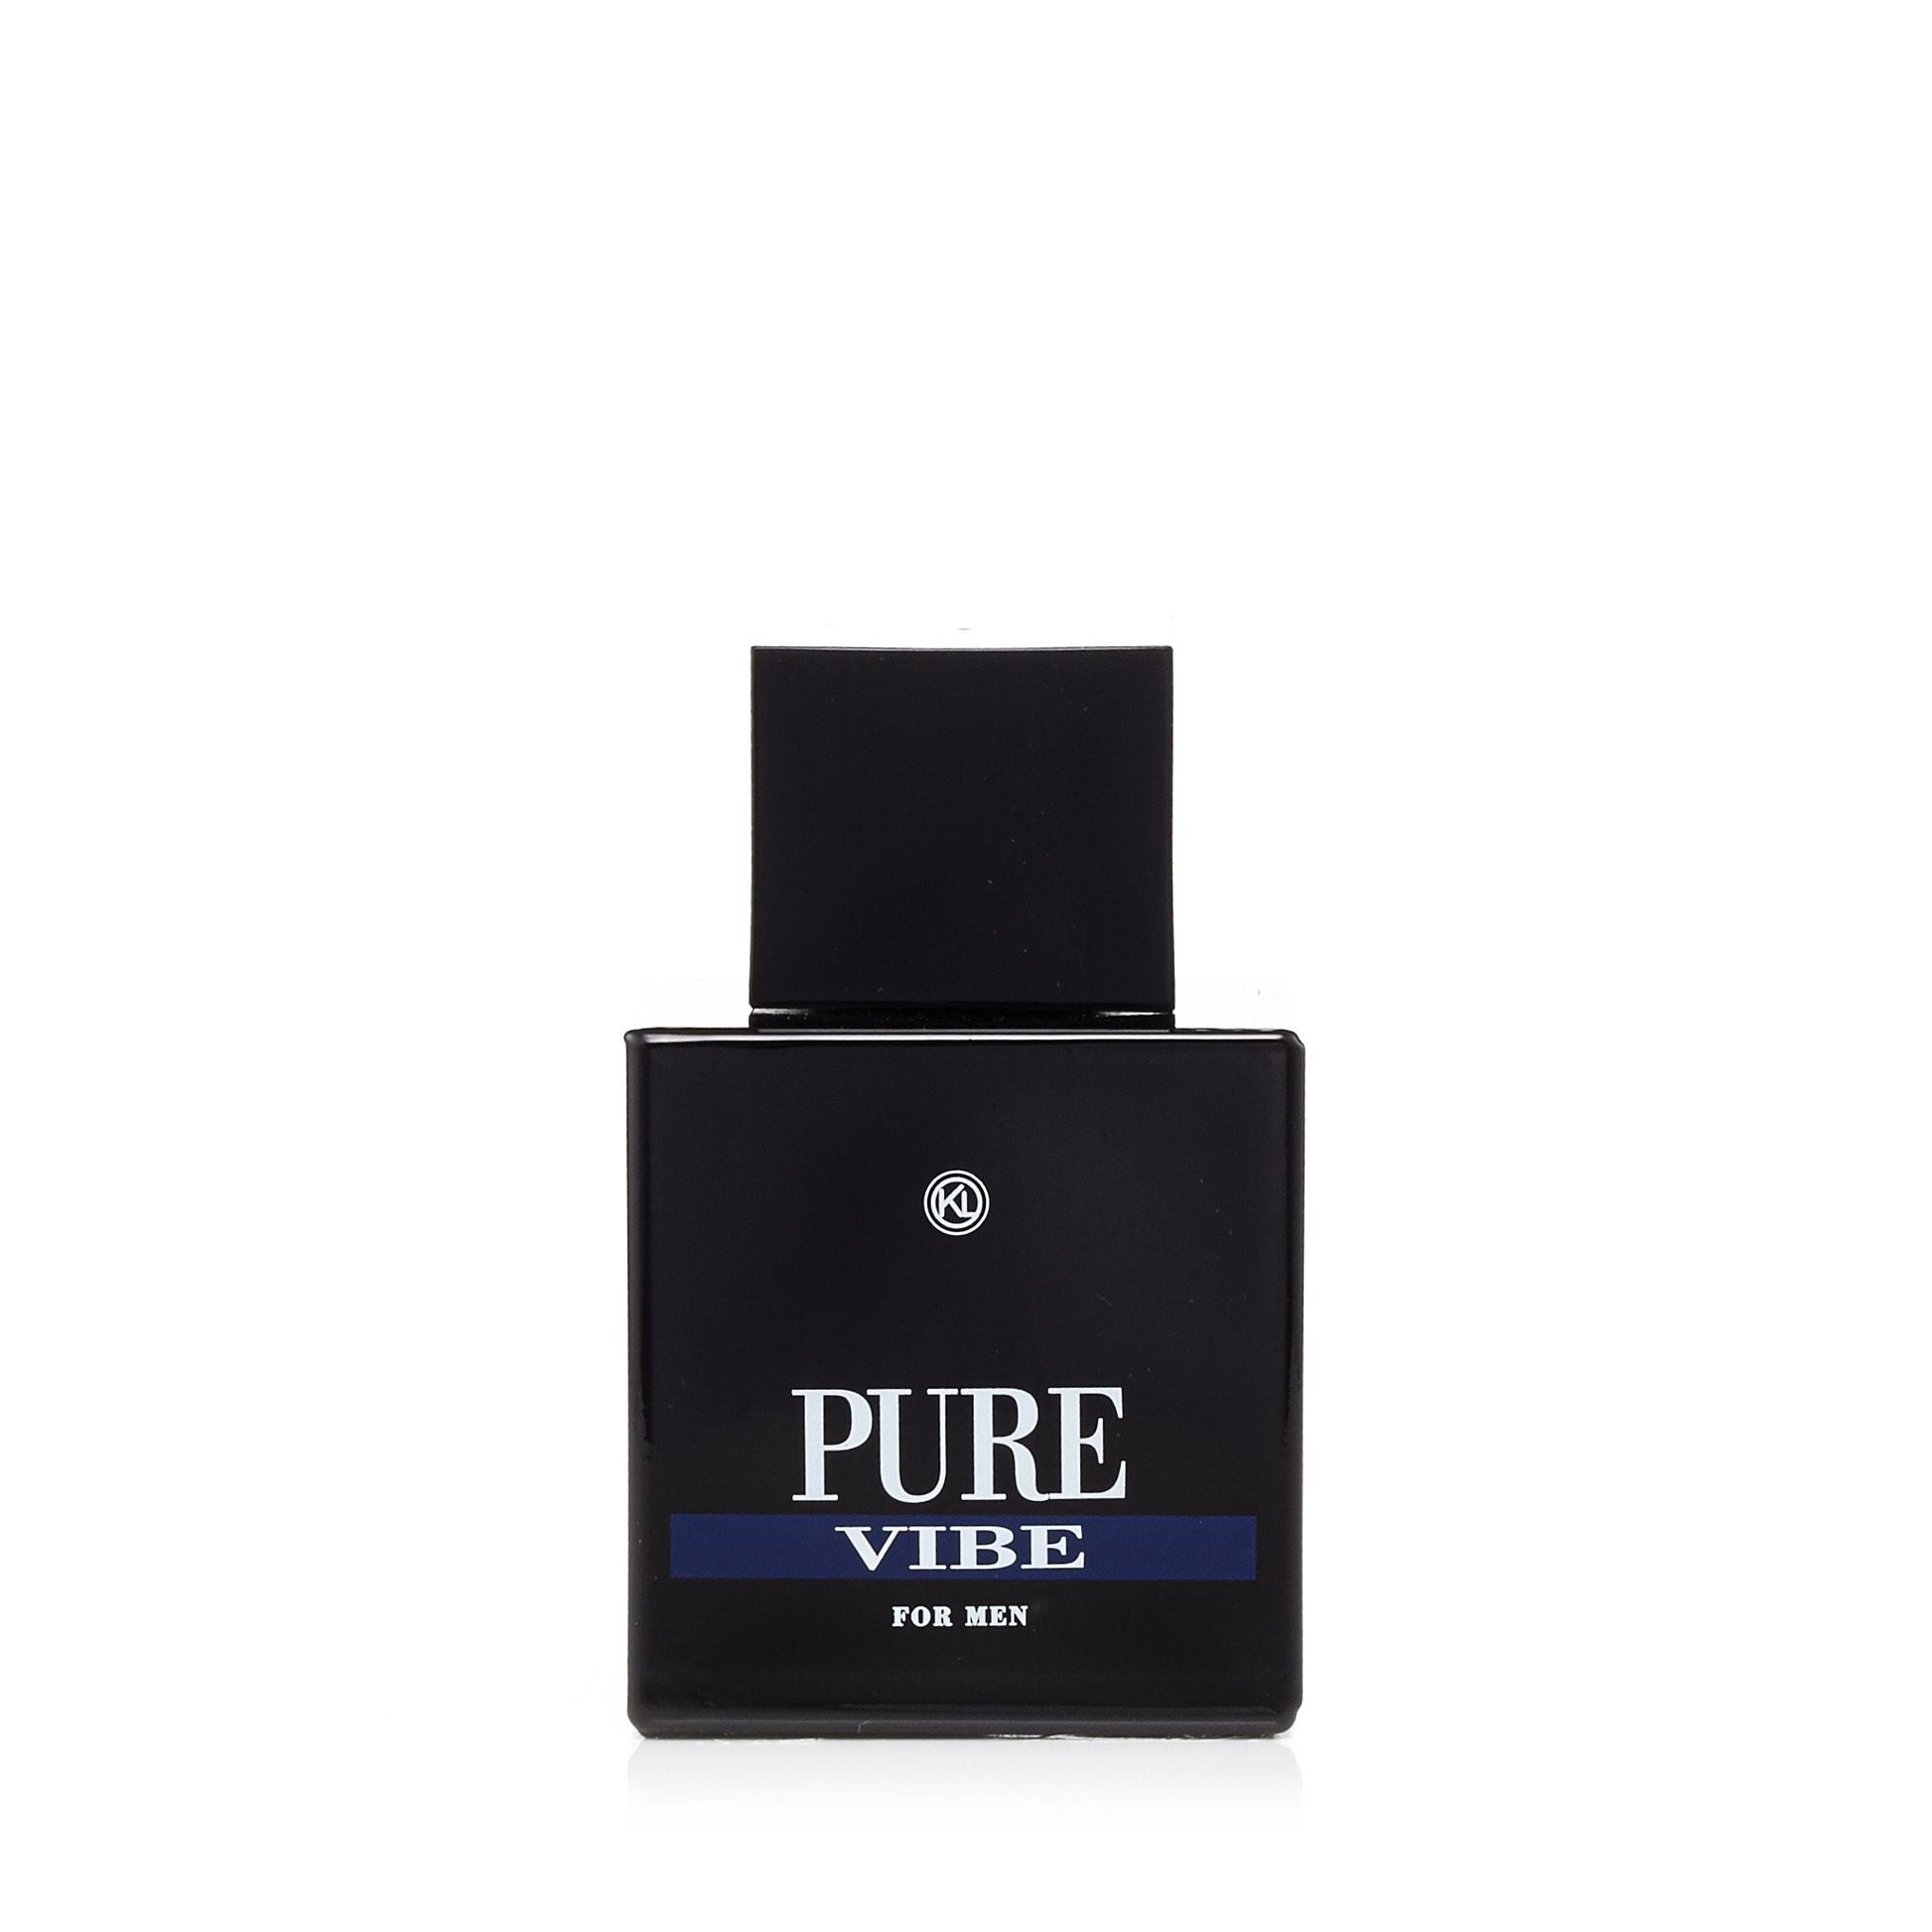 Pure Vibe Eau de Toilette Spray for Men, Product image 1